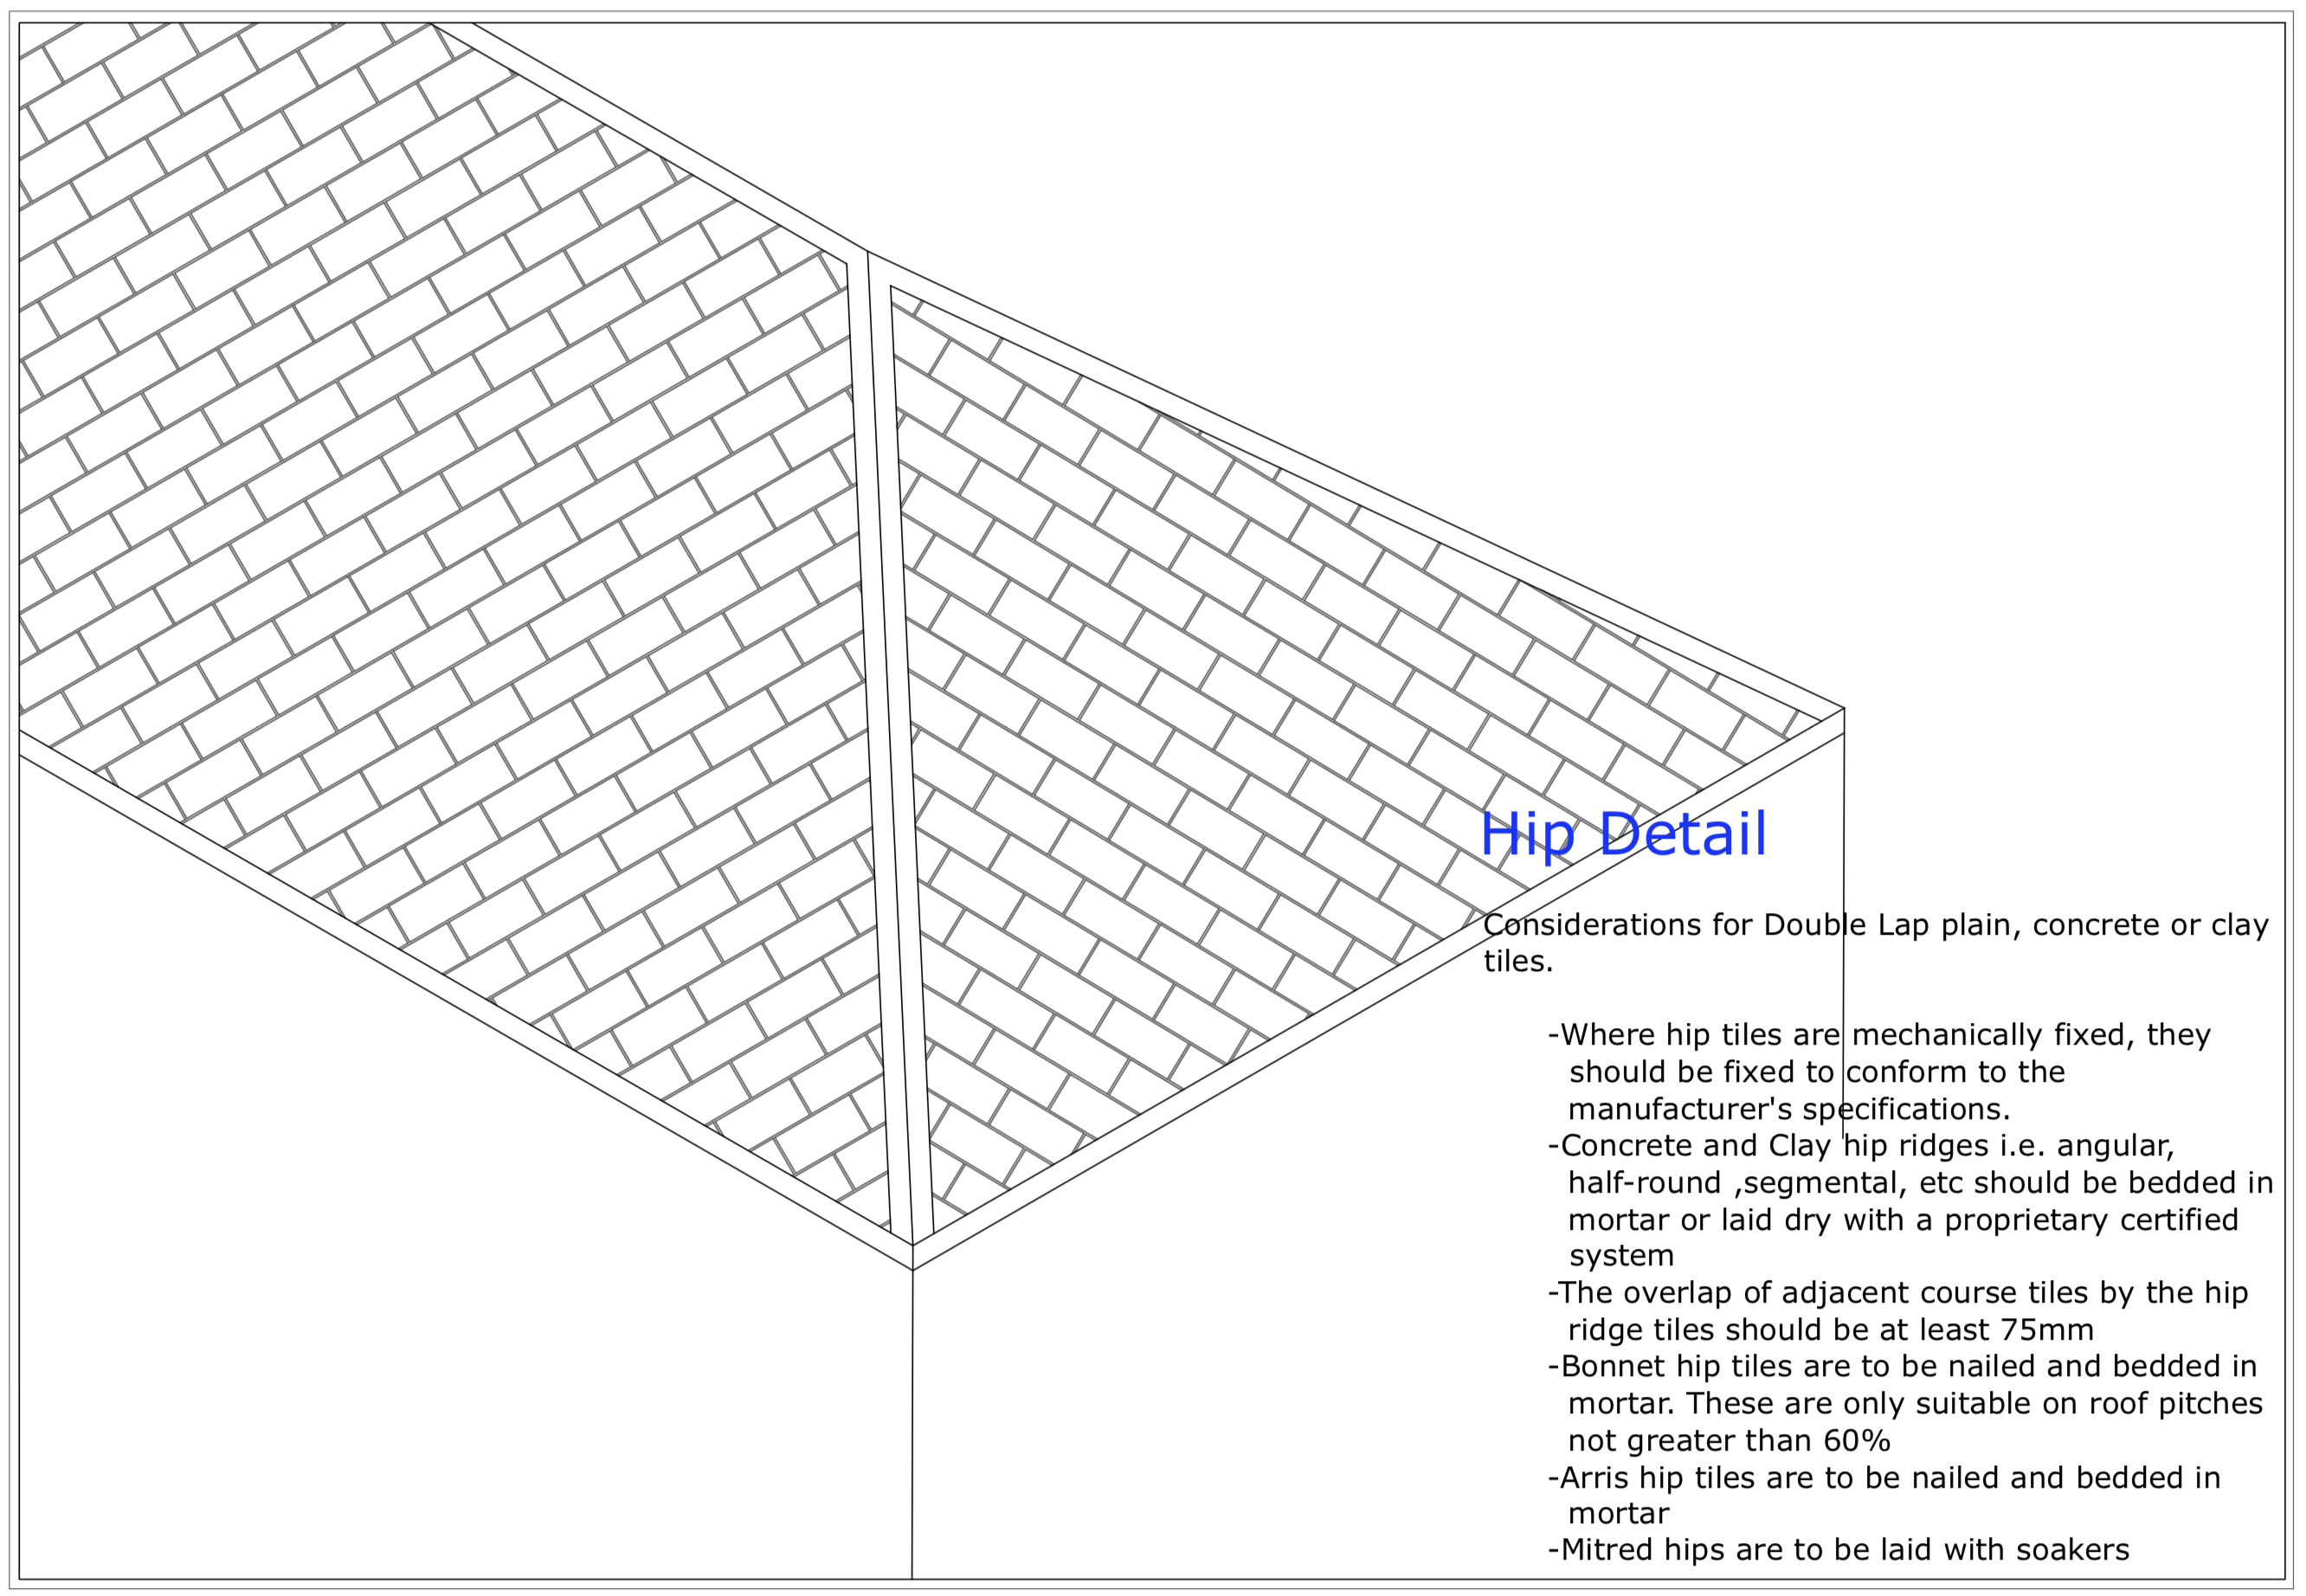 Diagram D100 - Hipped detail - double lap plain tiles, concrete or clay